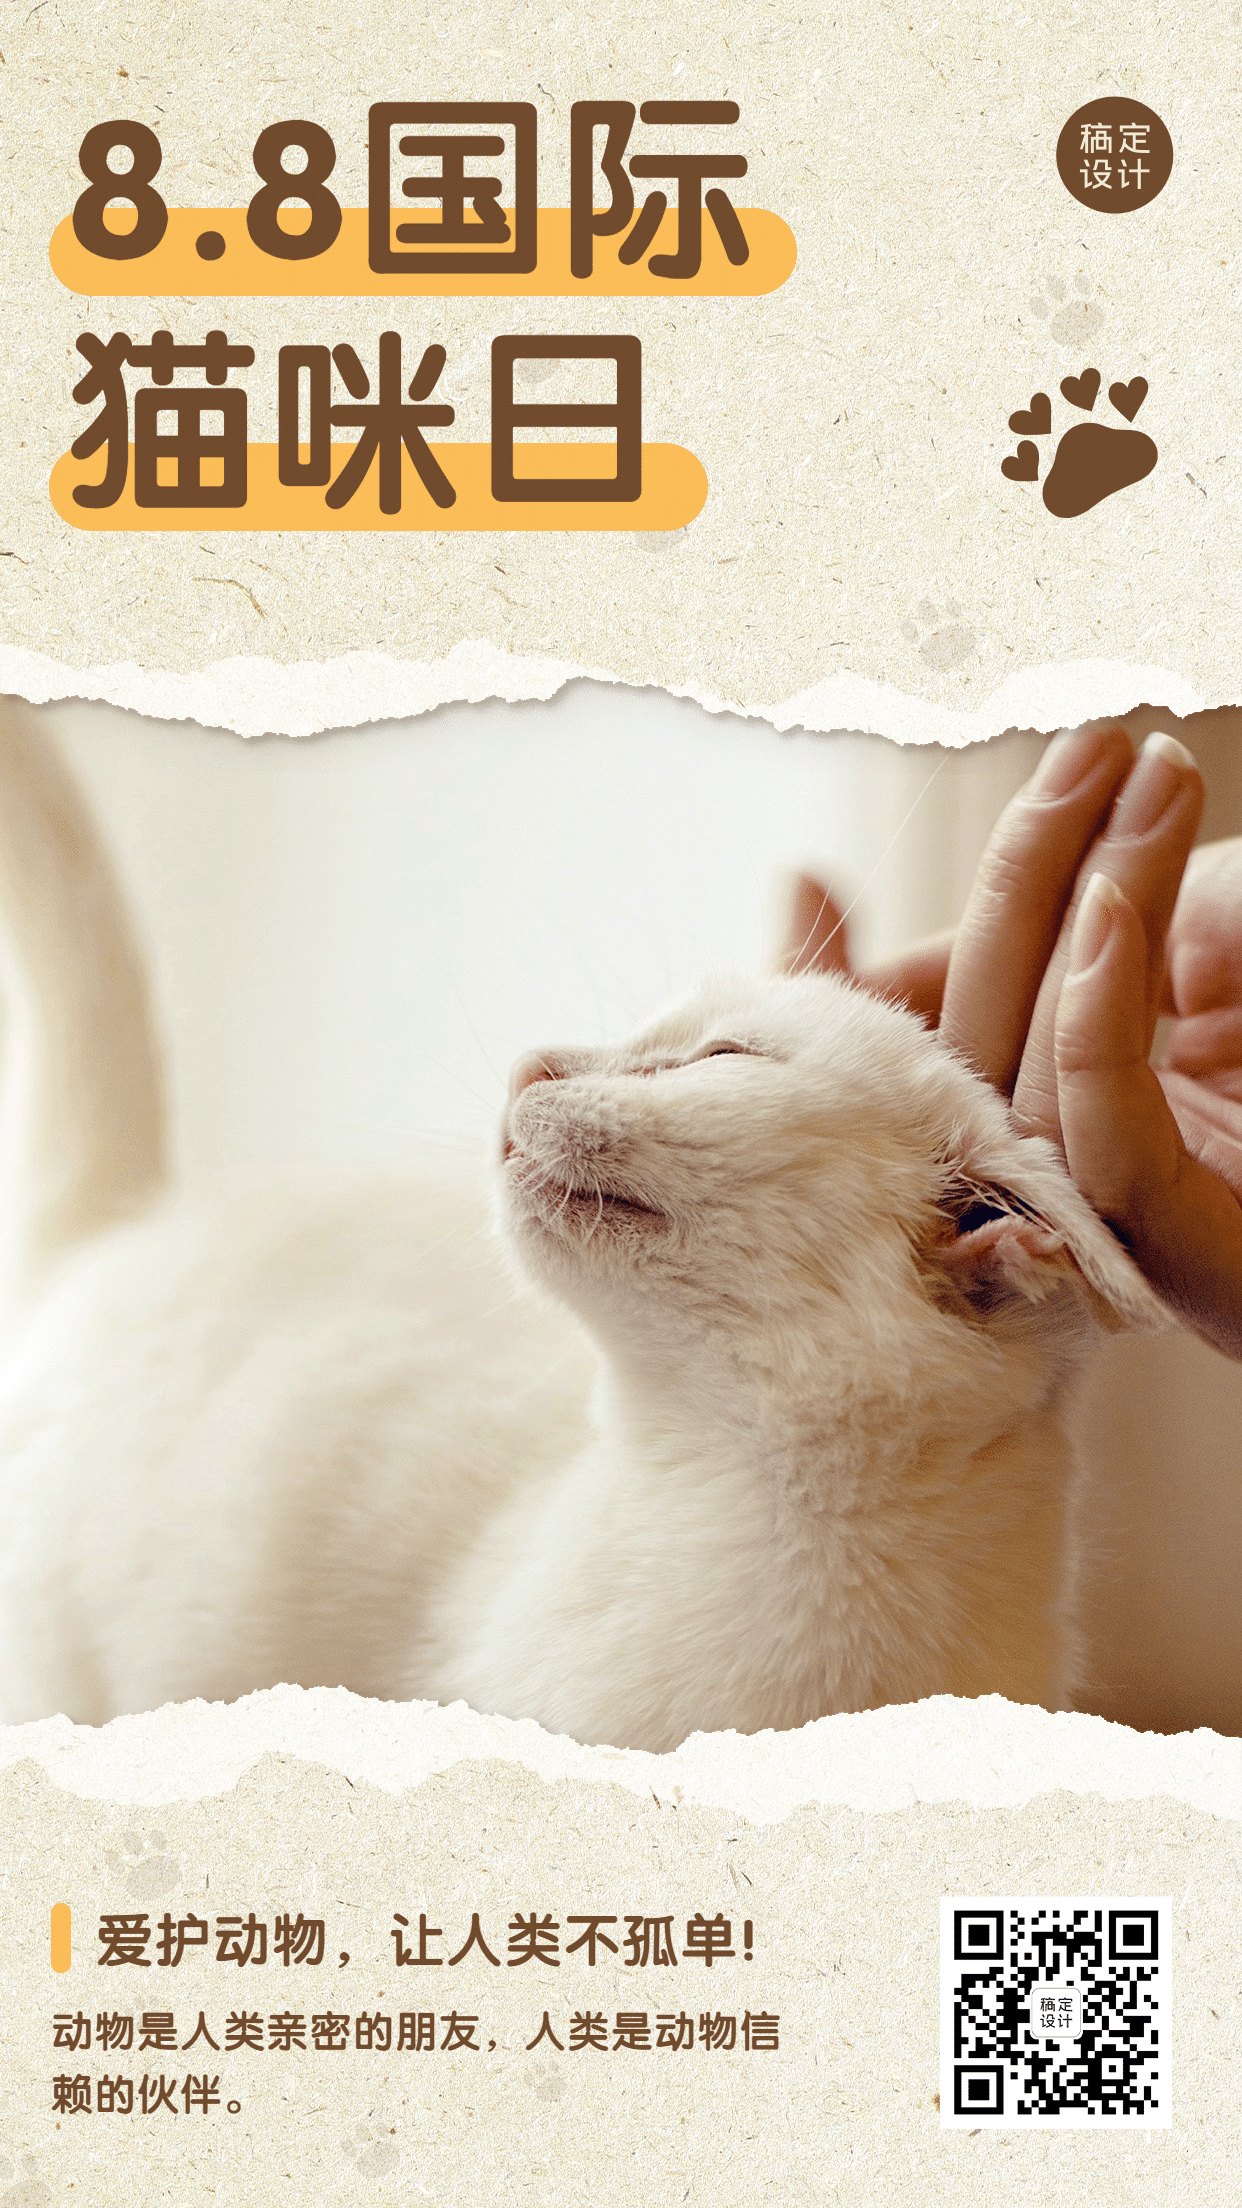 国际猫咪日关爱动物公益宣传实景手机海报